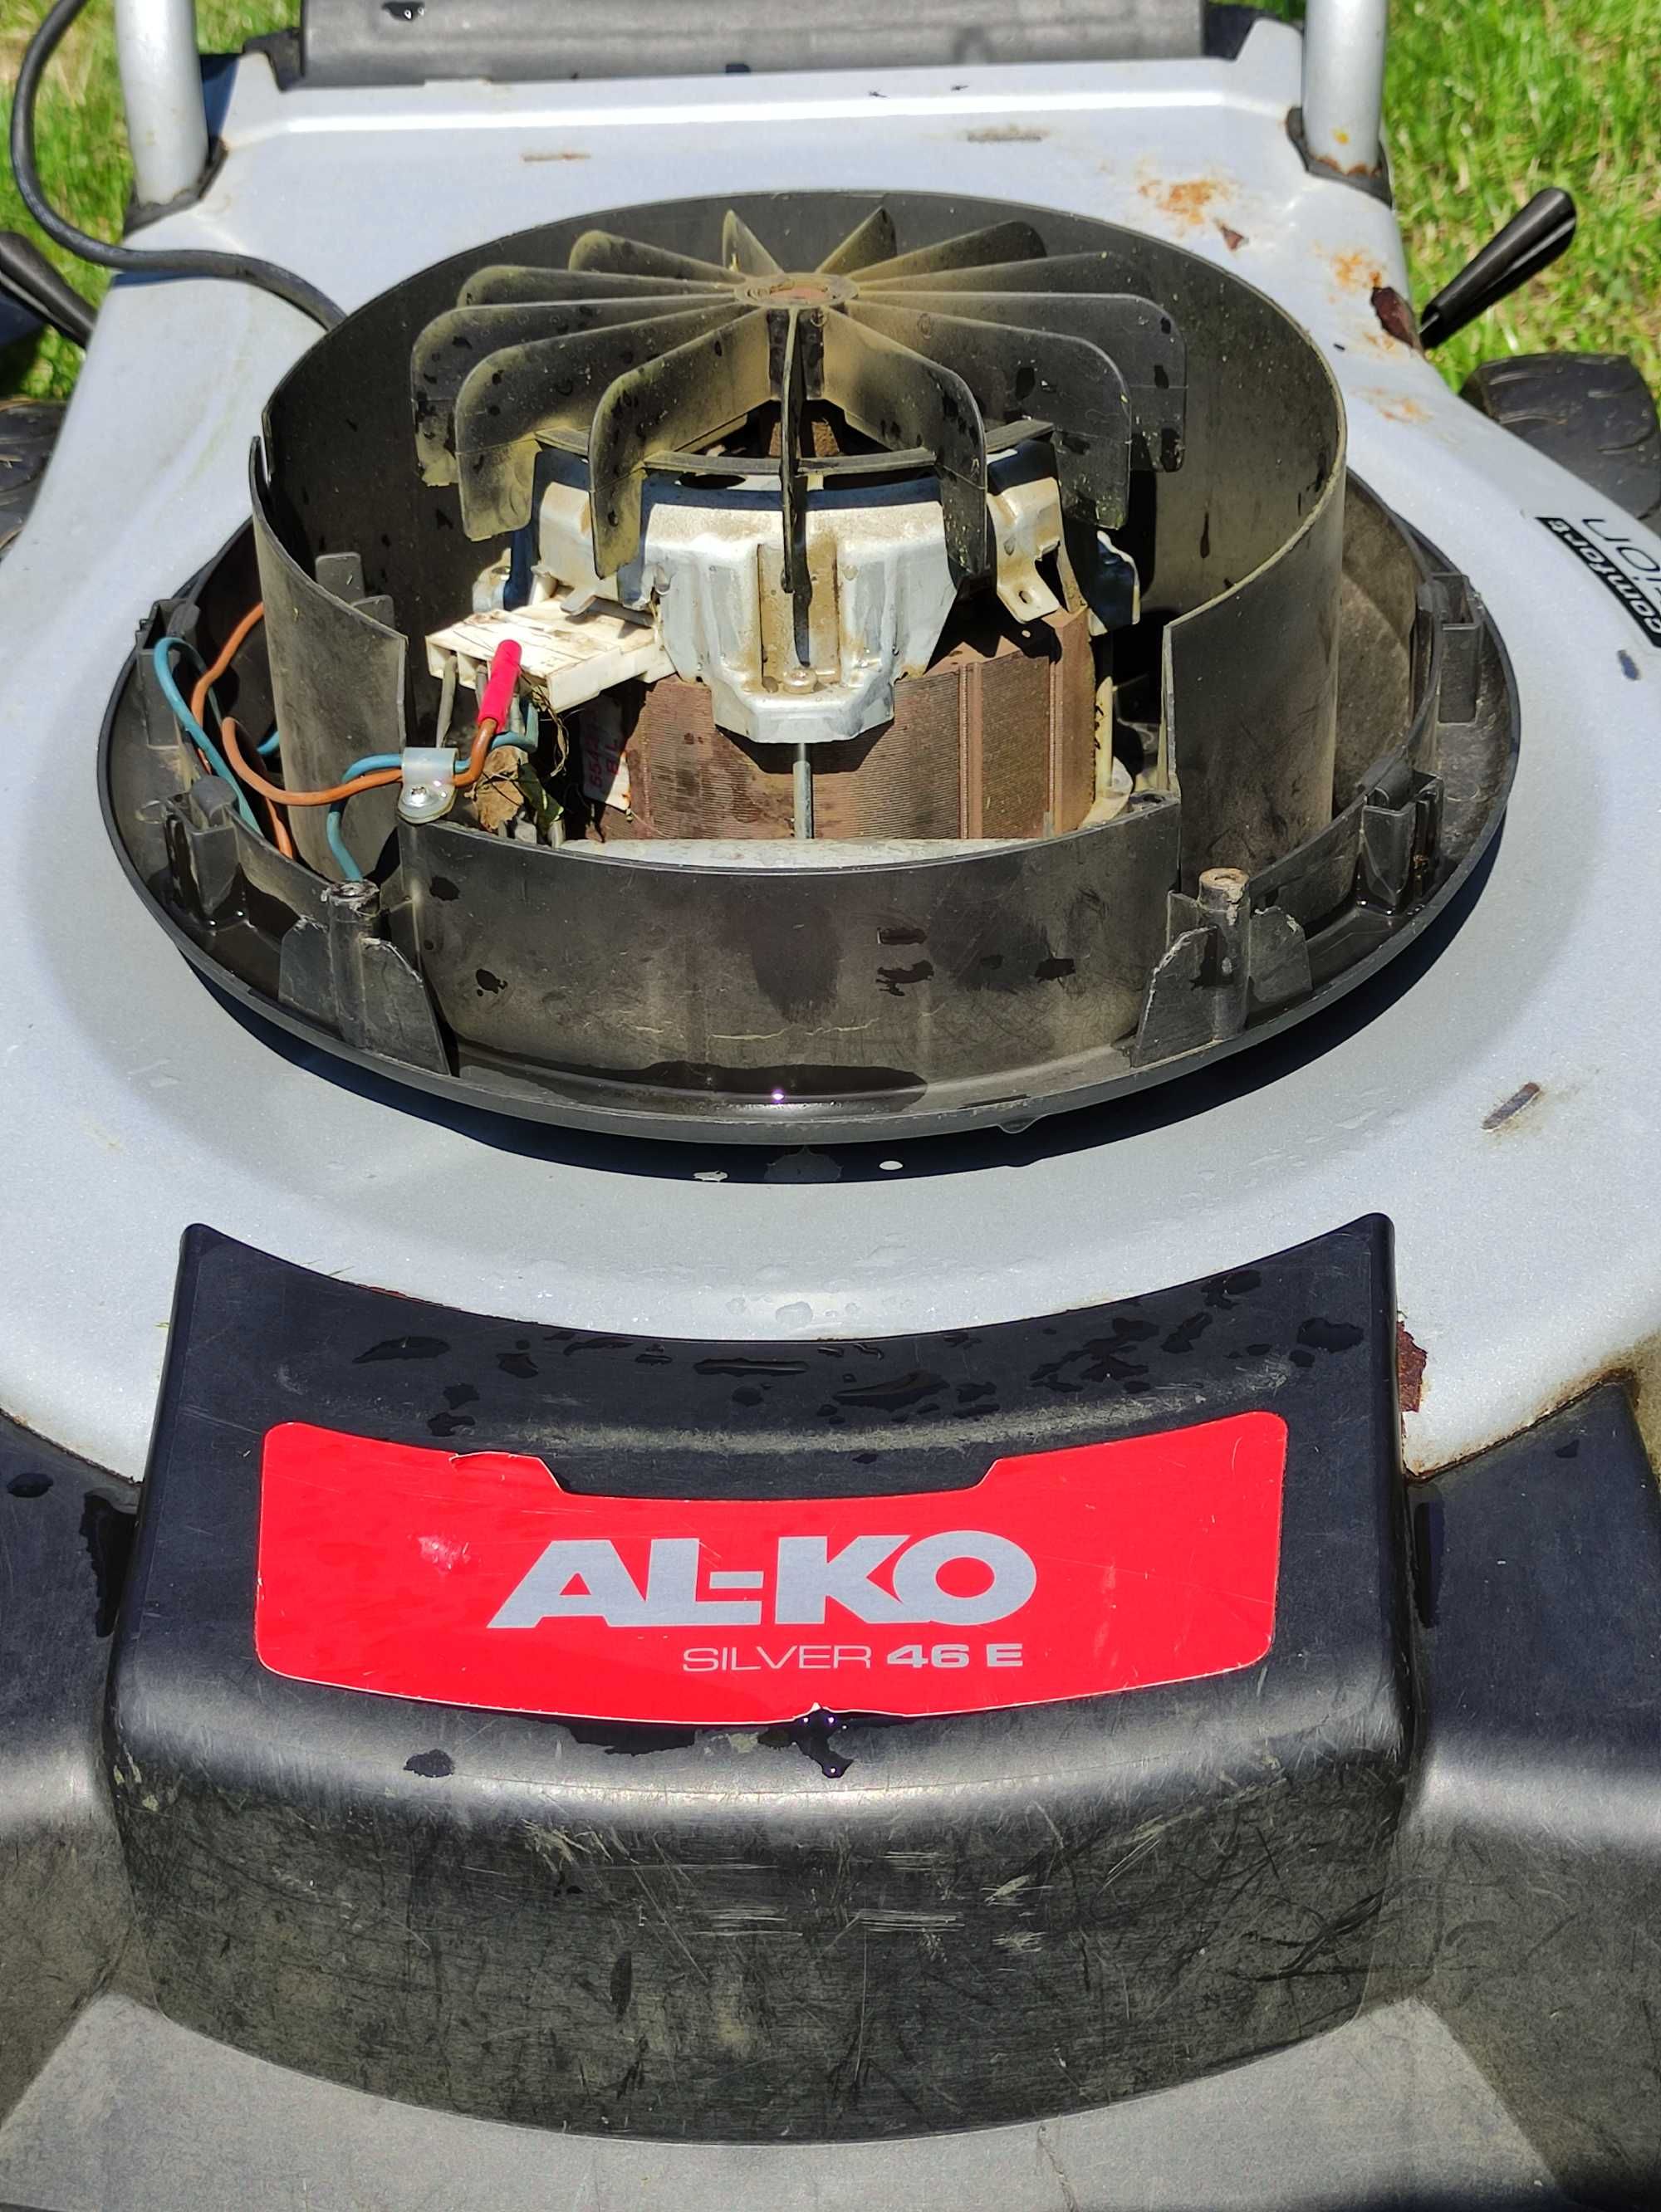 Elektryczna kosiarka do trawy Al Ko silver 46e dwufunkcyjna